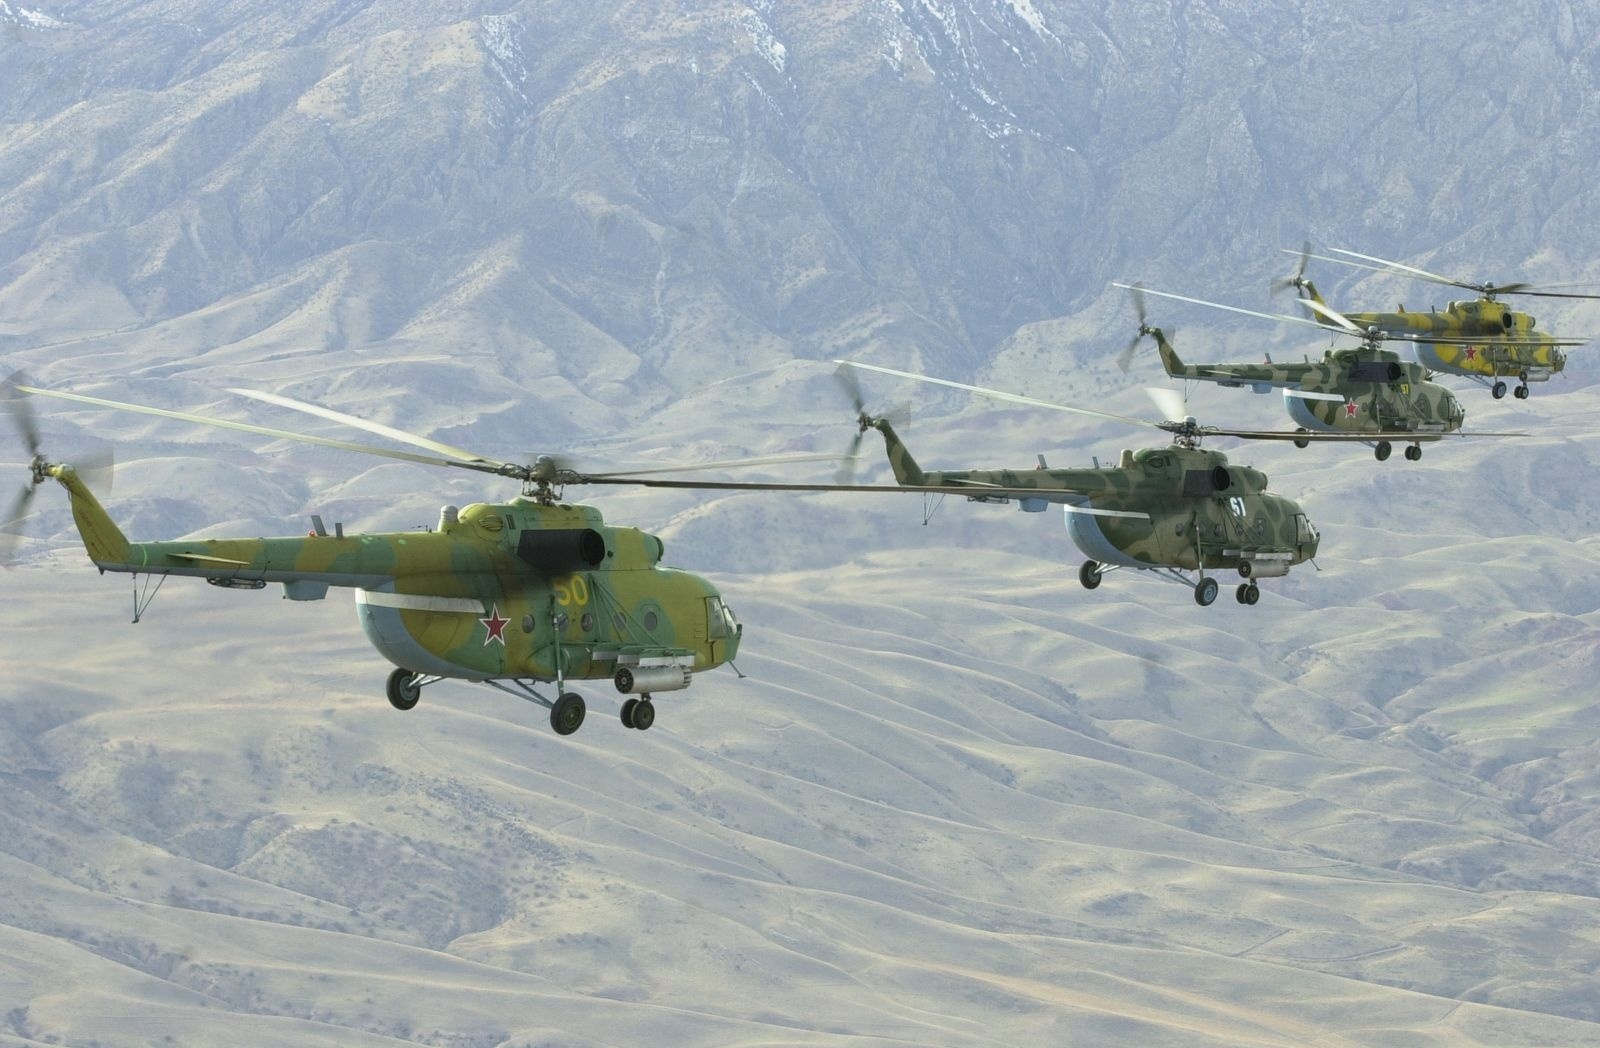 Hiện trực thăng Mi-8 vẫn đang phục vụ tại nhiều quốc gia